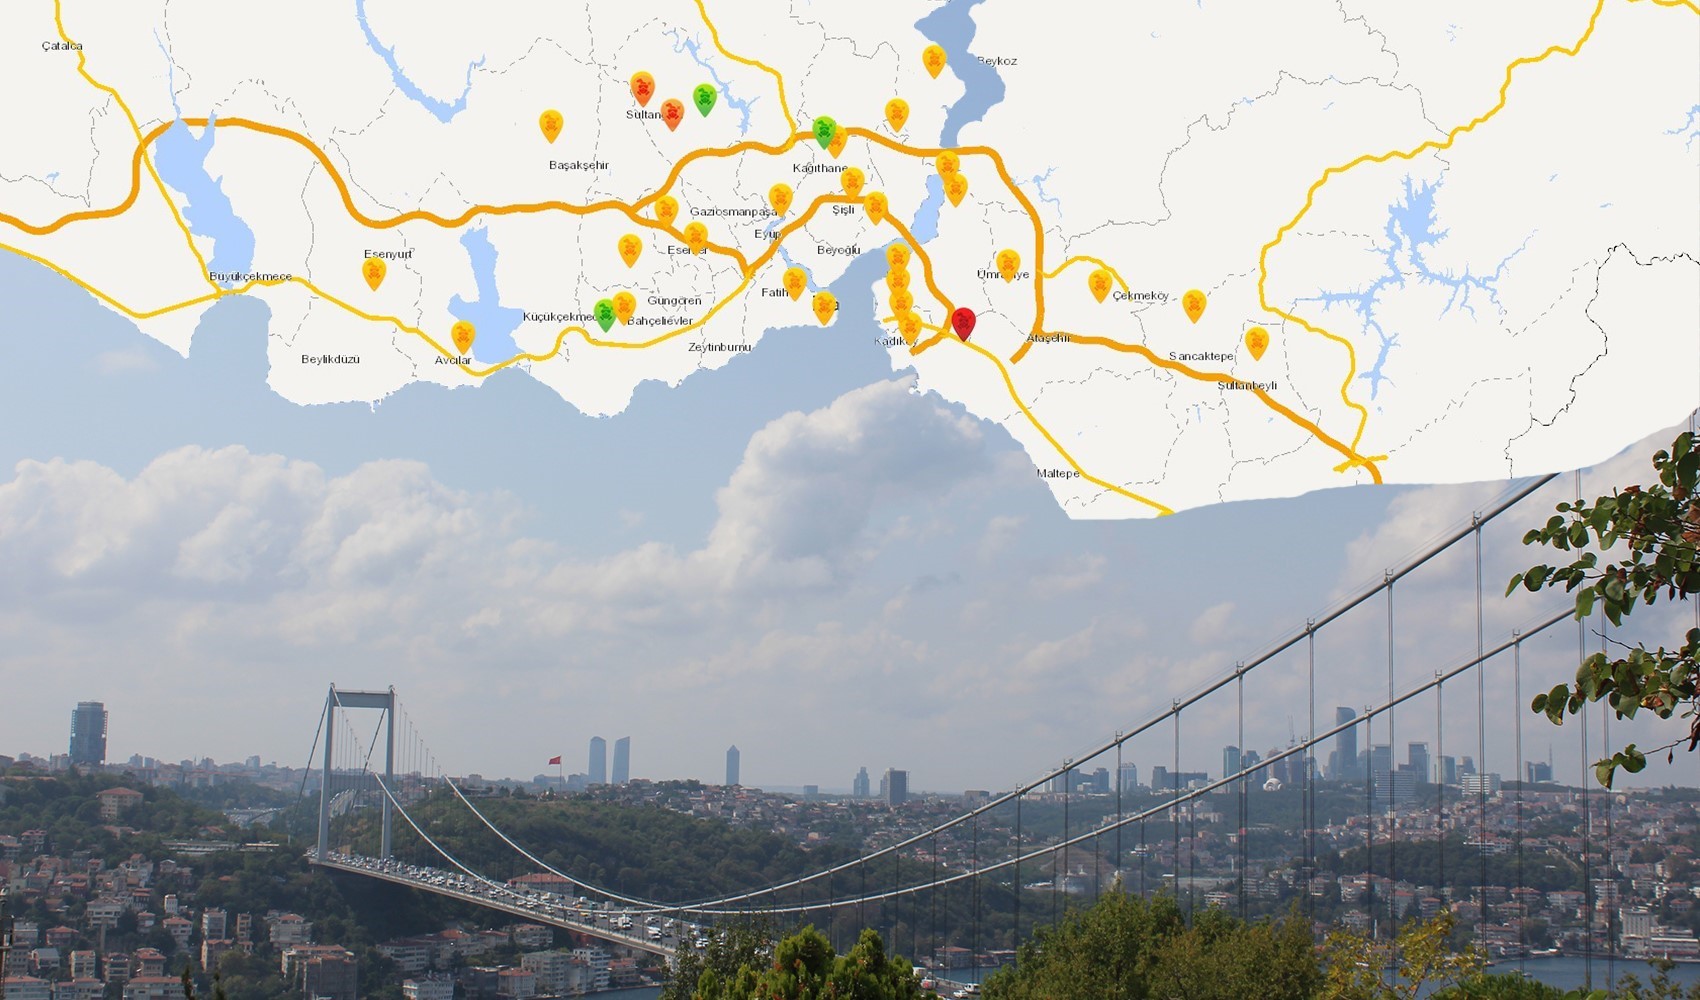 İstanbul’da en yoğun hava kirliliği nerede ölçüldü?